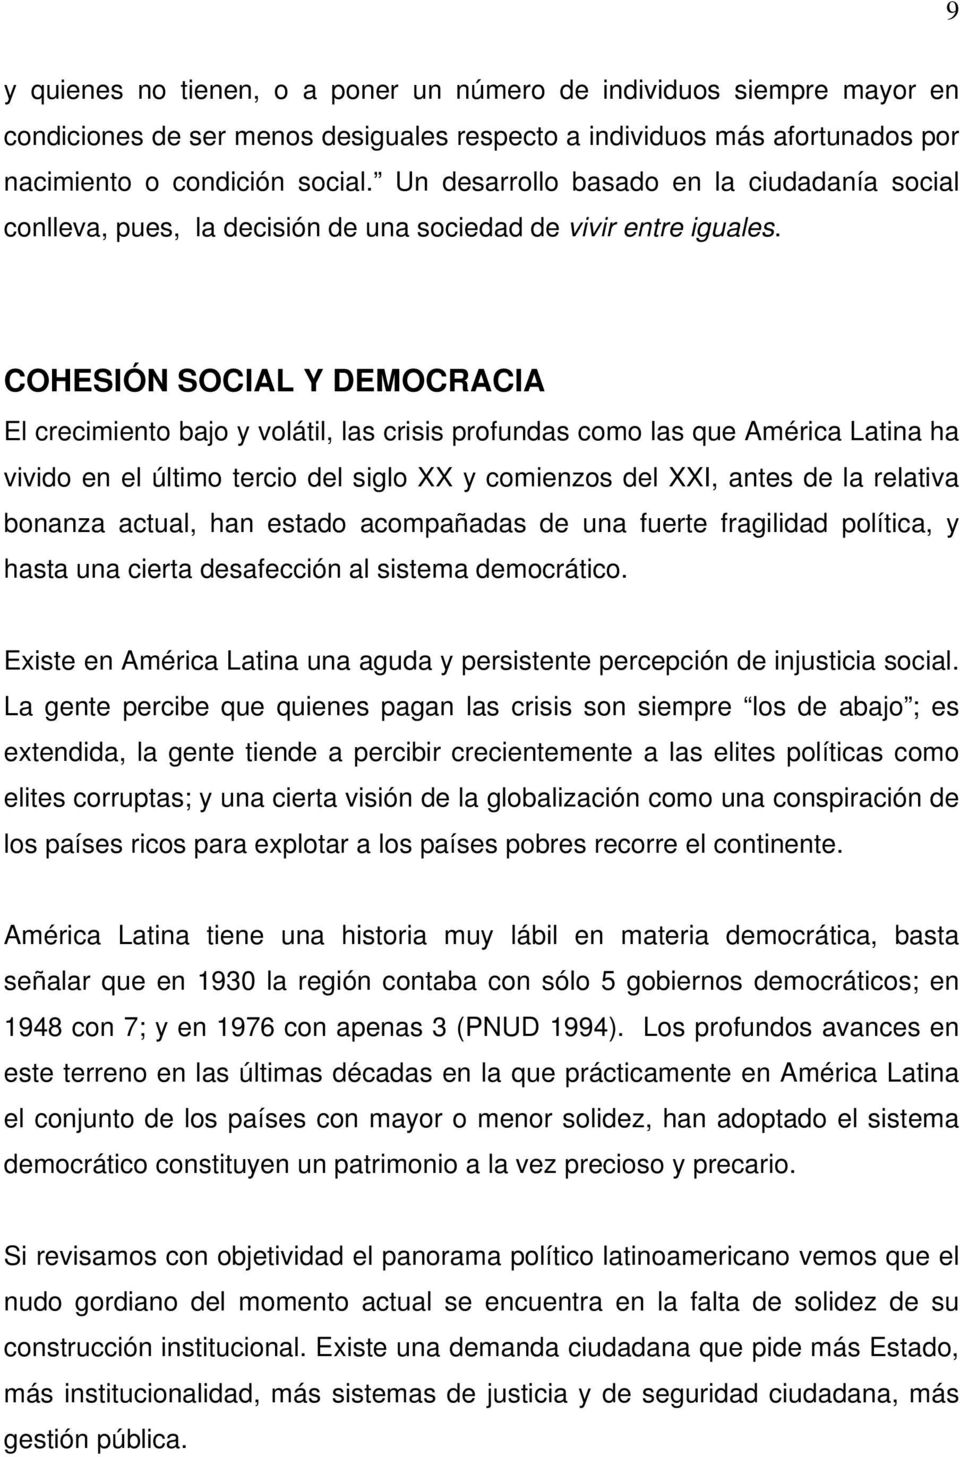 COHESIÓN SOCIAL Y DEMOCRACIA El crecimiento bajo y volátil, las crisis profundas como las que América Latina ha vivido en el último tercio del siglo XX y comienzos del XXI, antes de la relativa